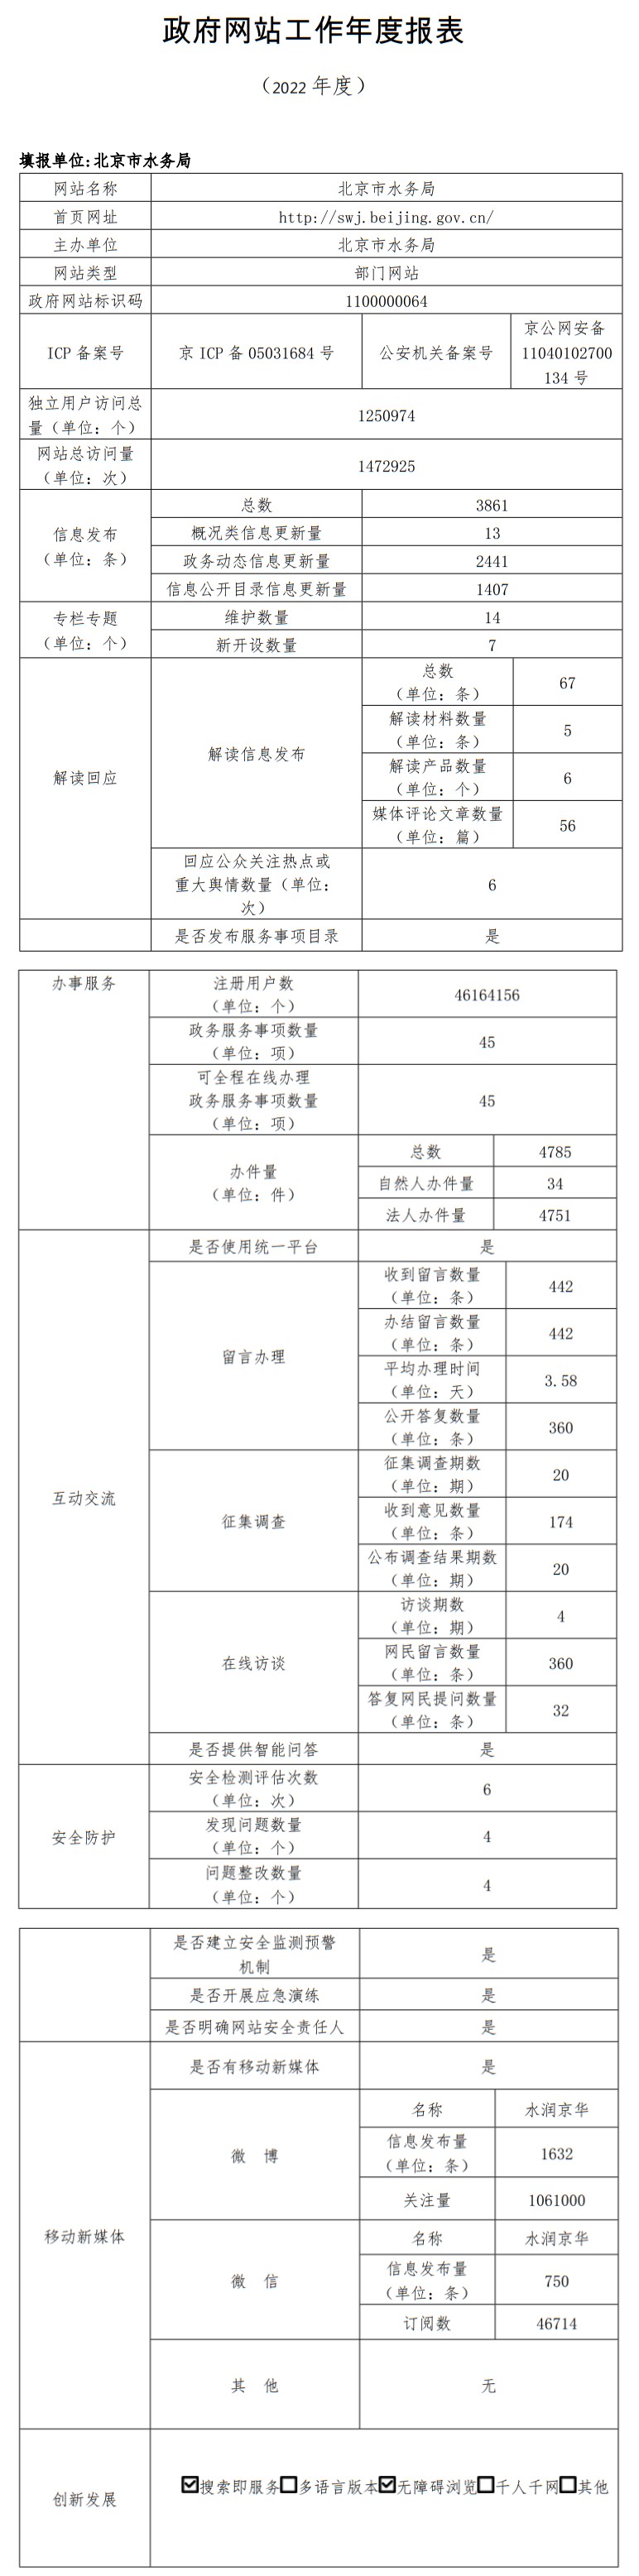 北京市水务局2022年政府网站年度工作报表